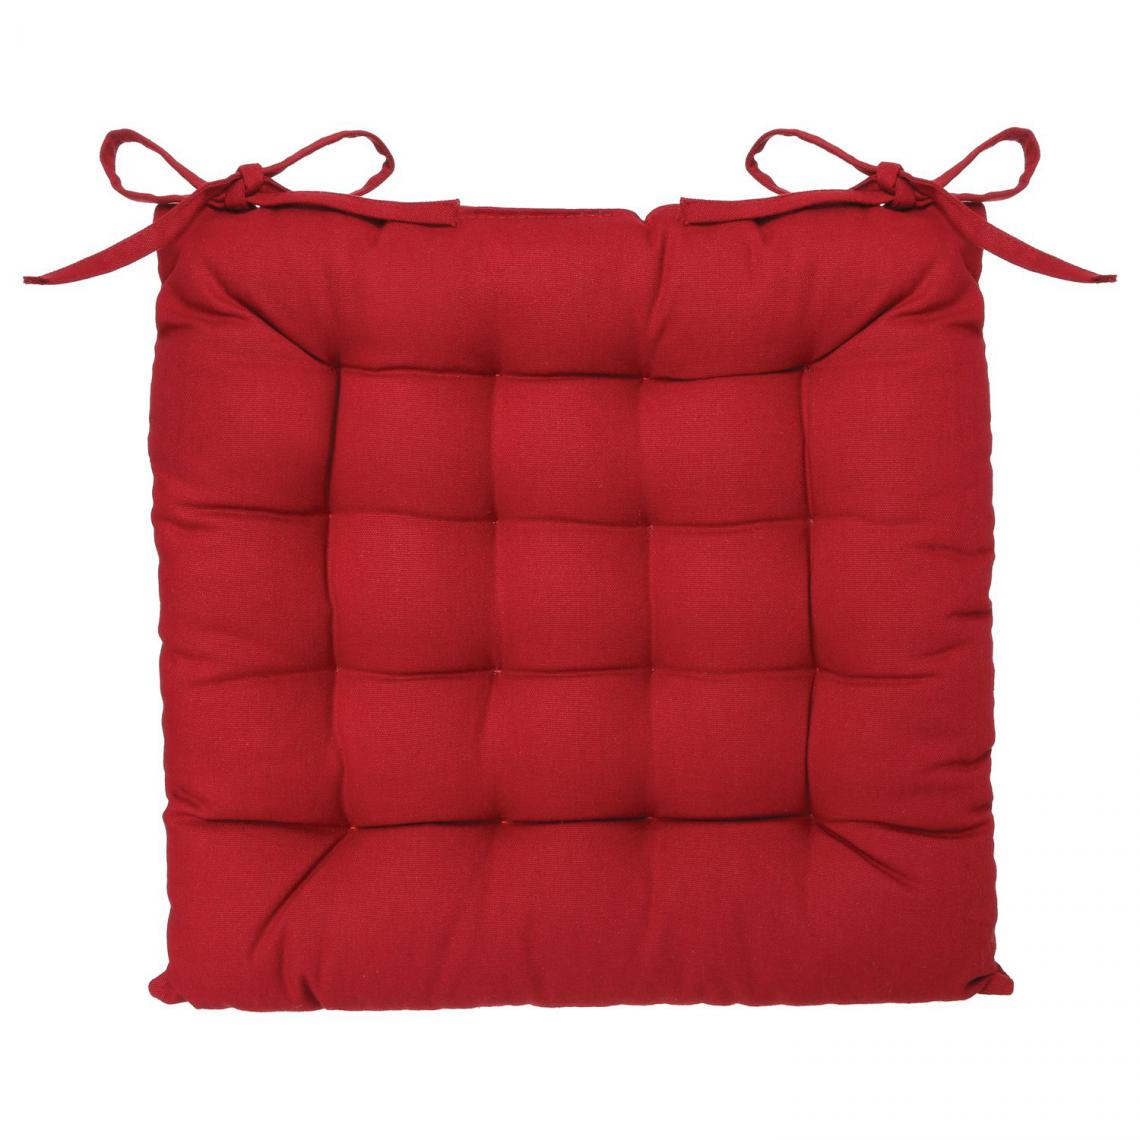 Mobea - Lot 2x Coussin de chaise carré - Long. 38 cm - Rouge - Coussins, galettes de jardin